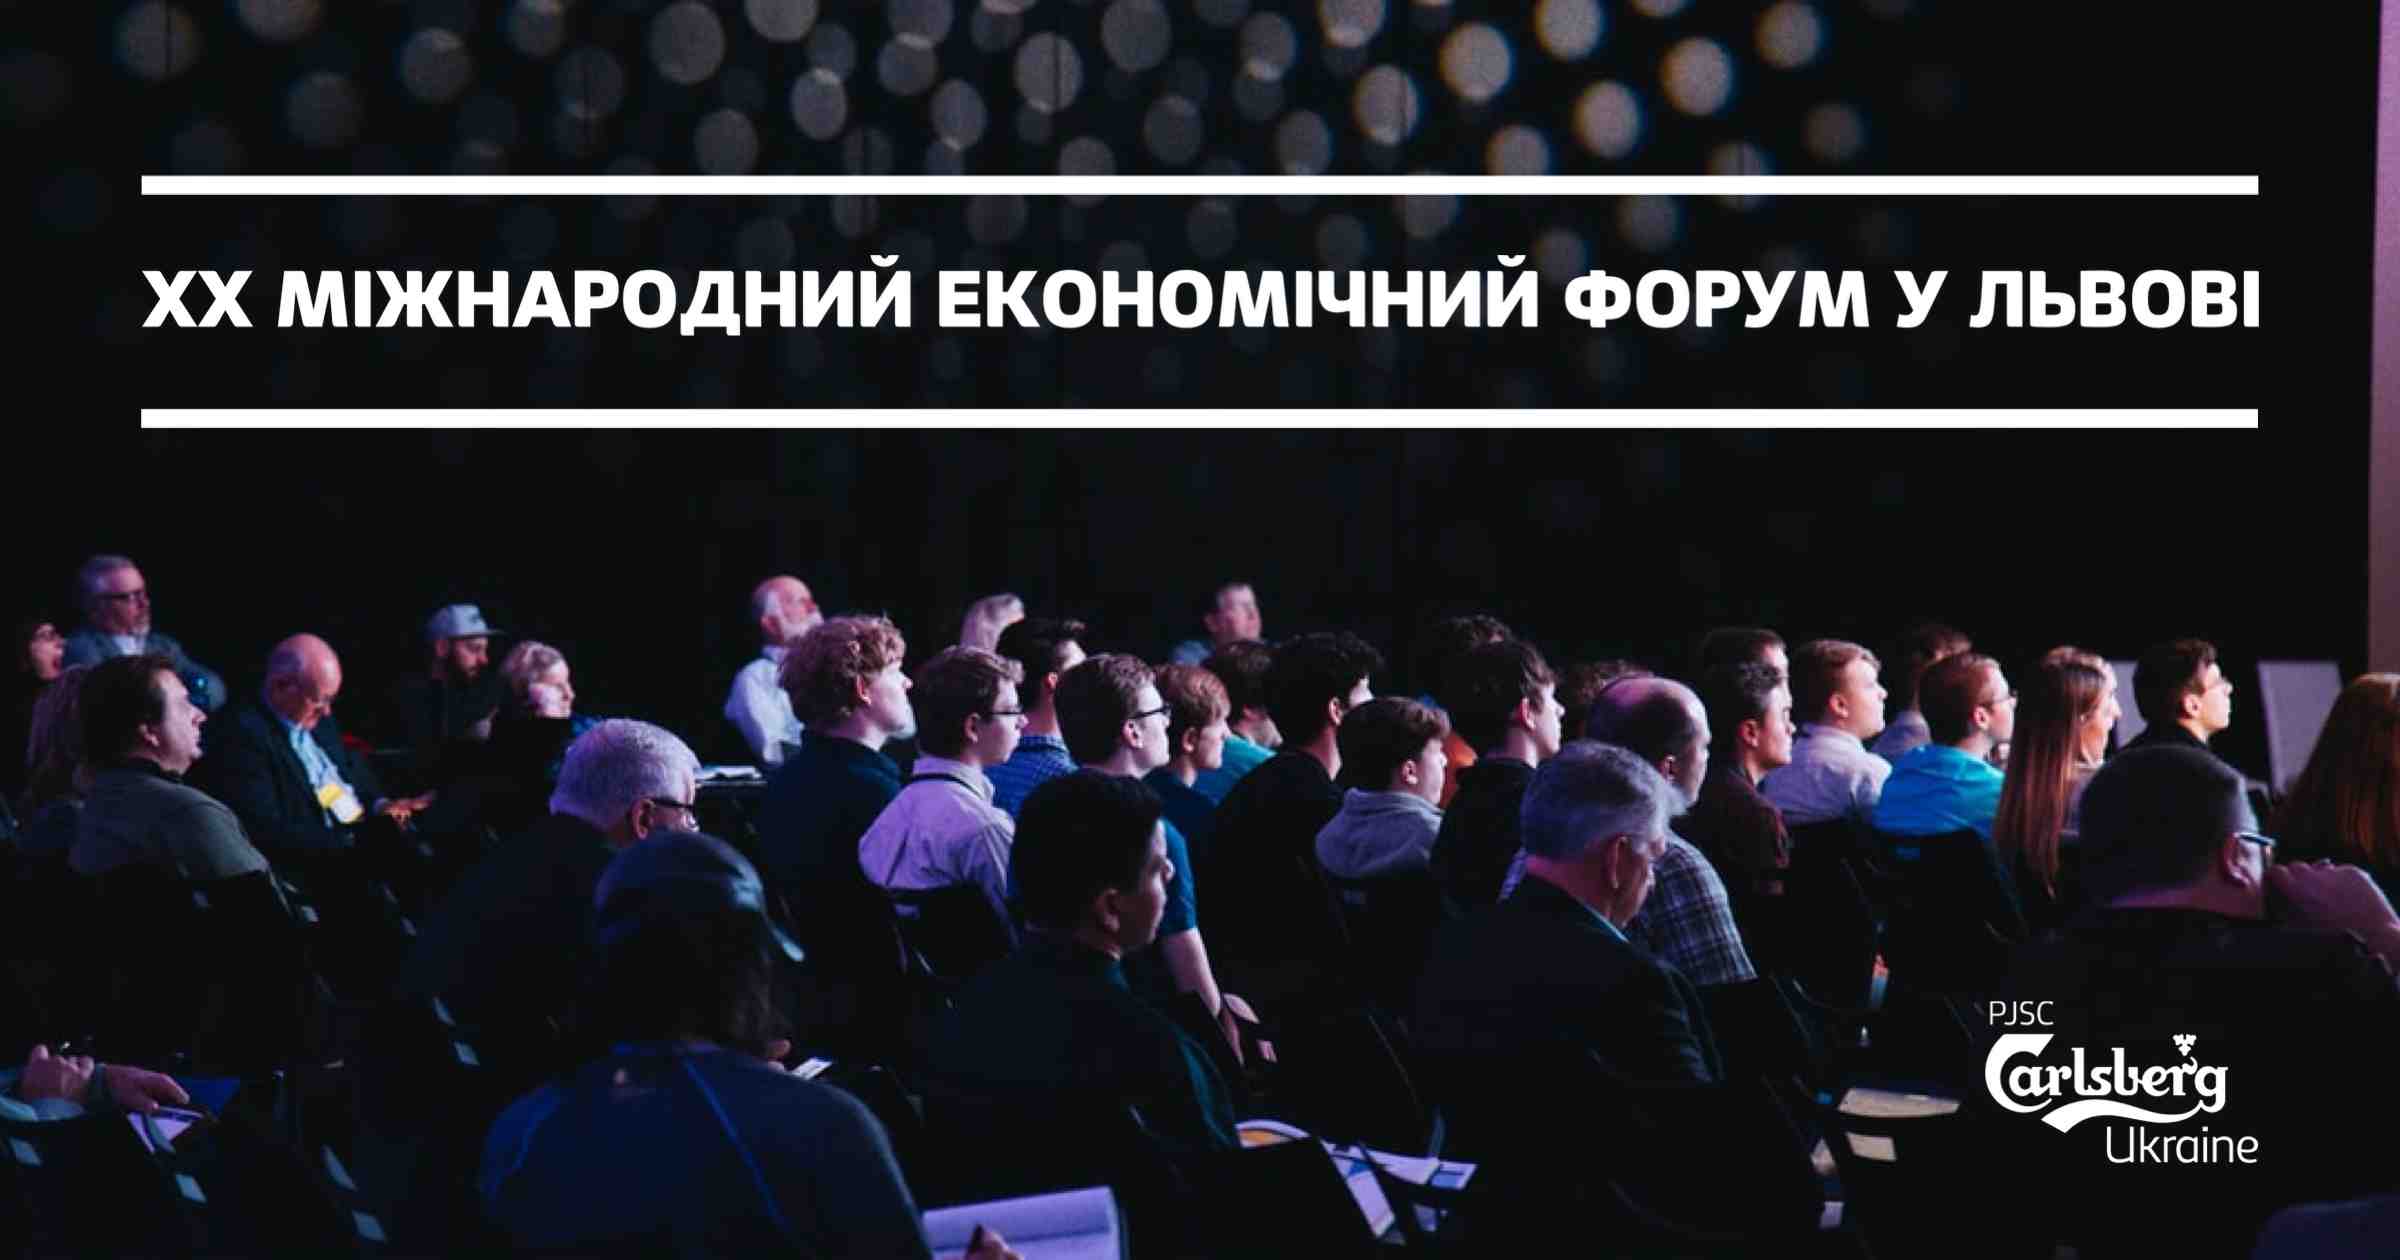 Carlsberg Ukraine - бізнес-партнер XX Міжнародного економічного форуму у Львові